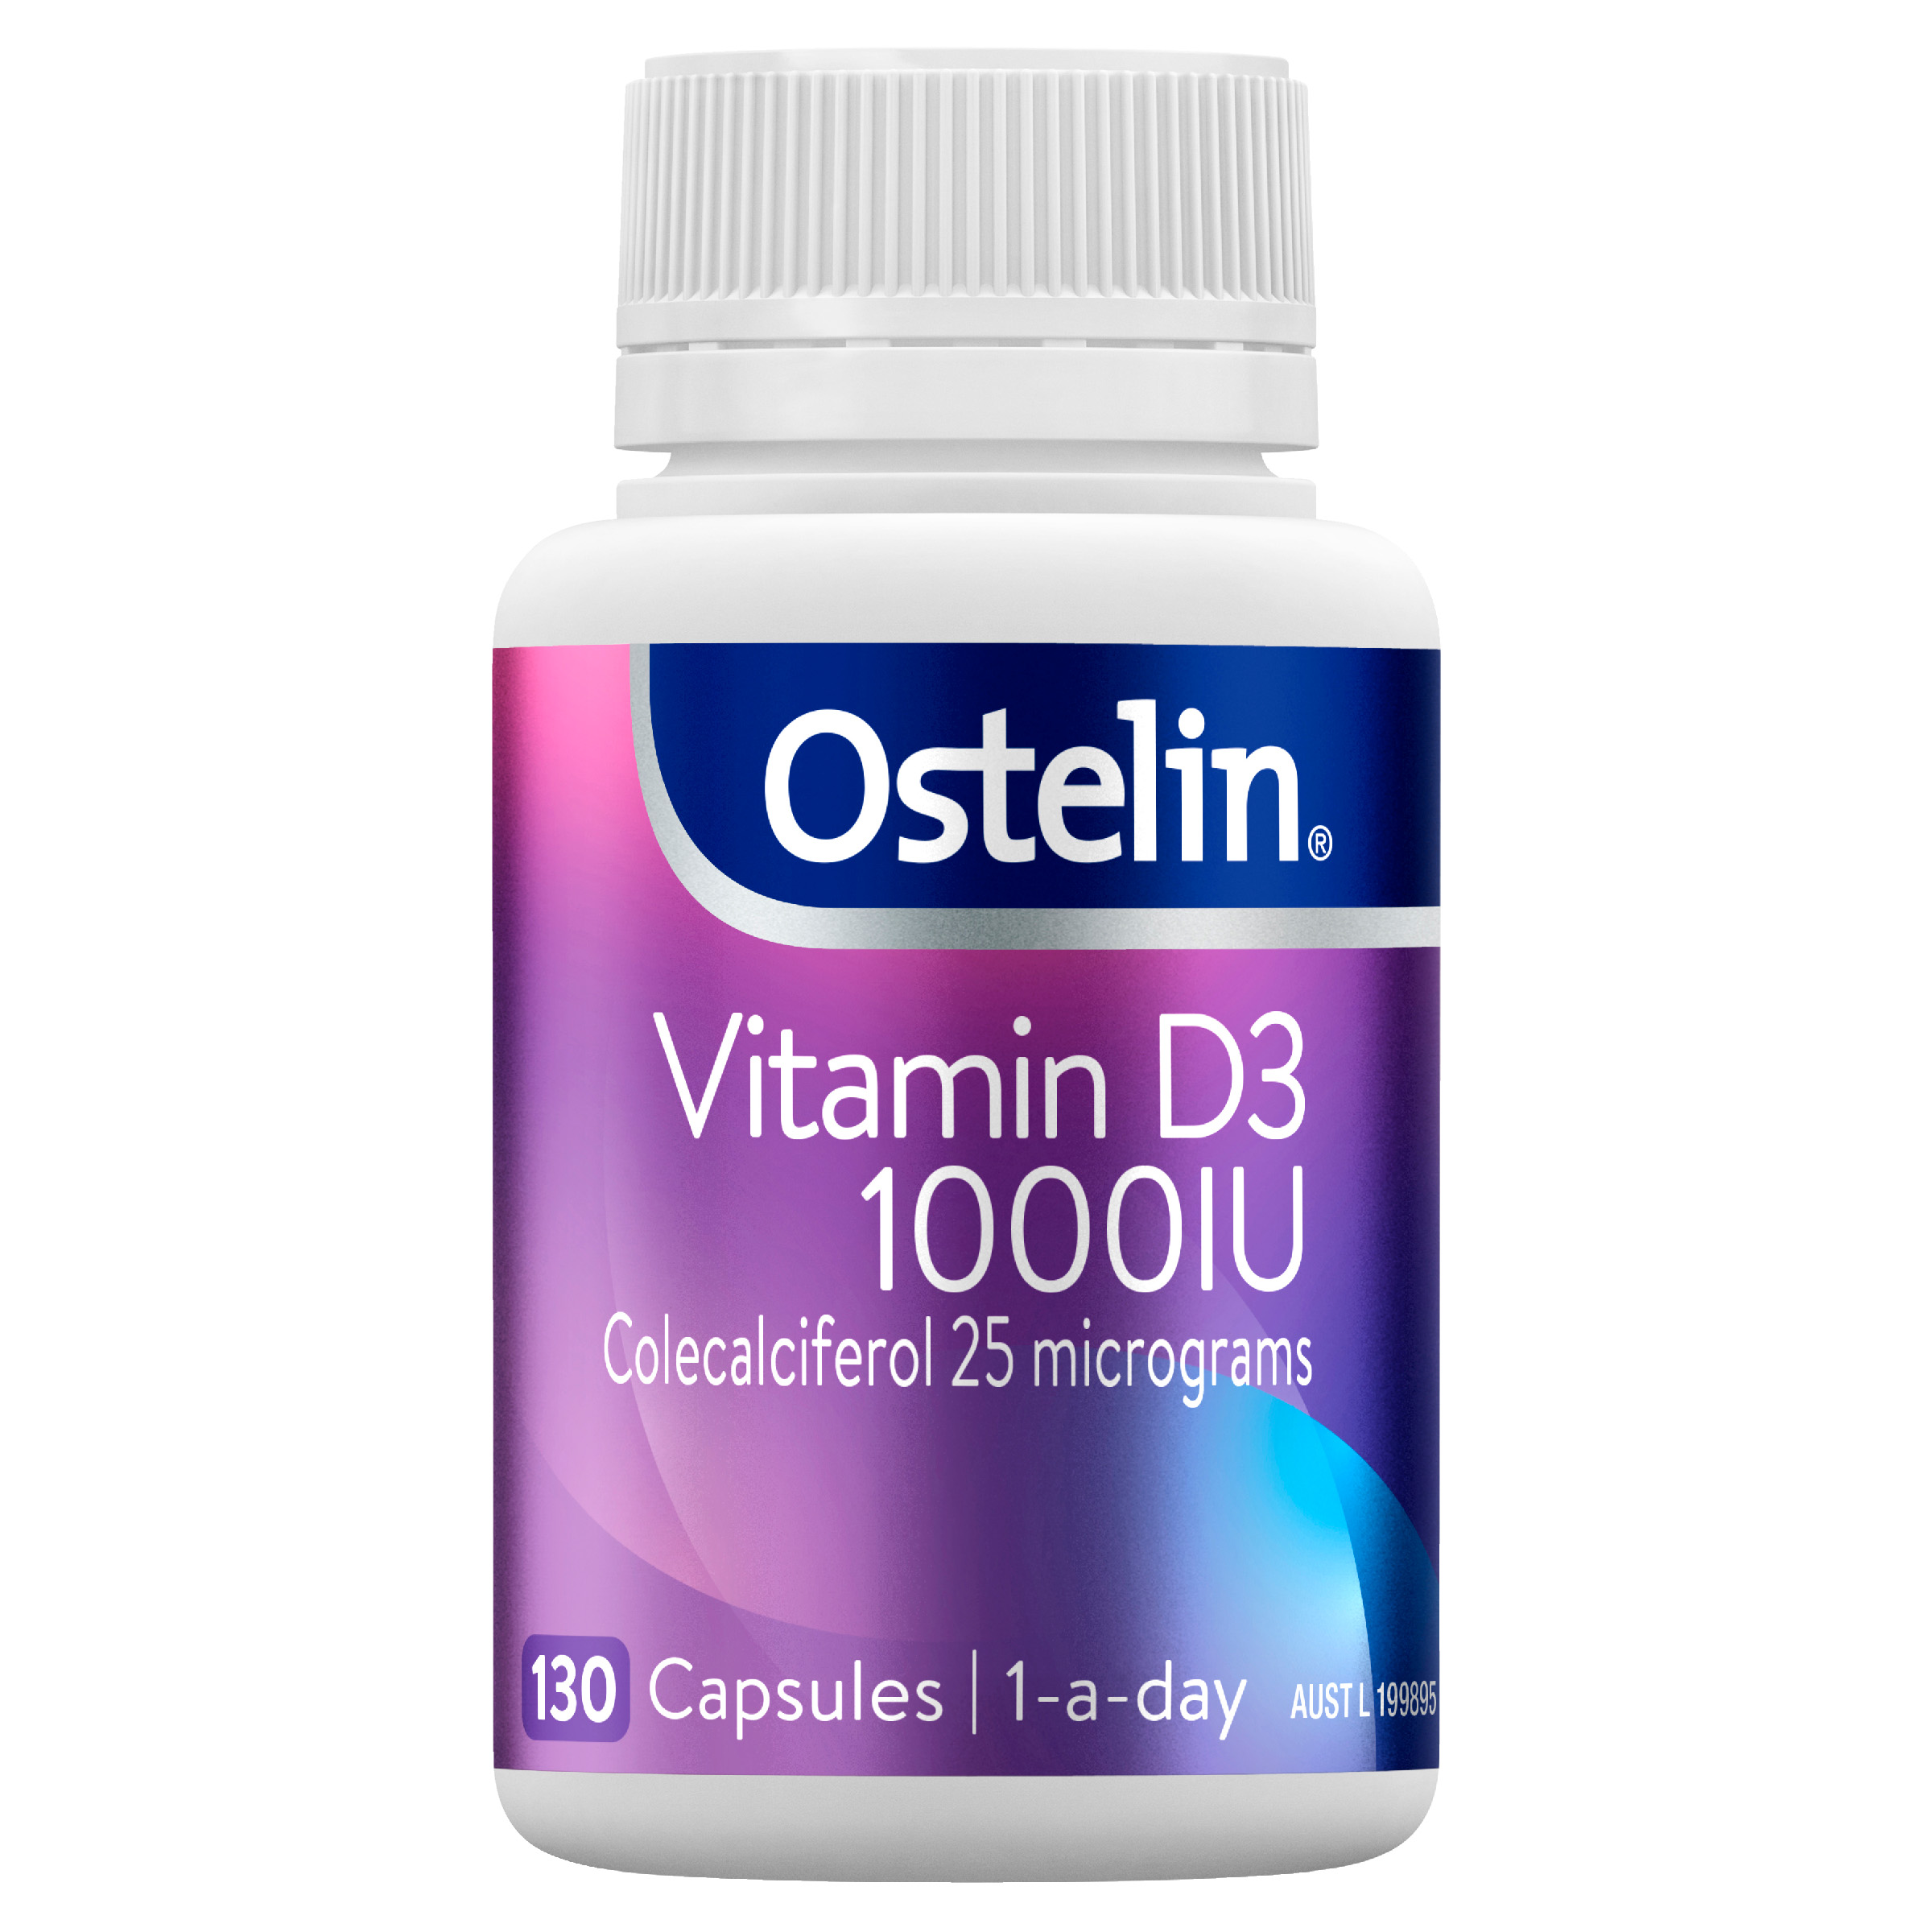 Vitamin D3 1000IU Capsules